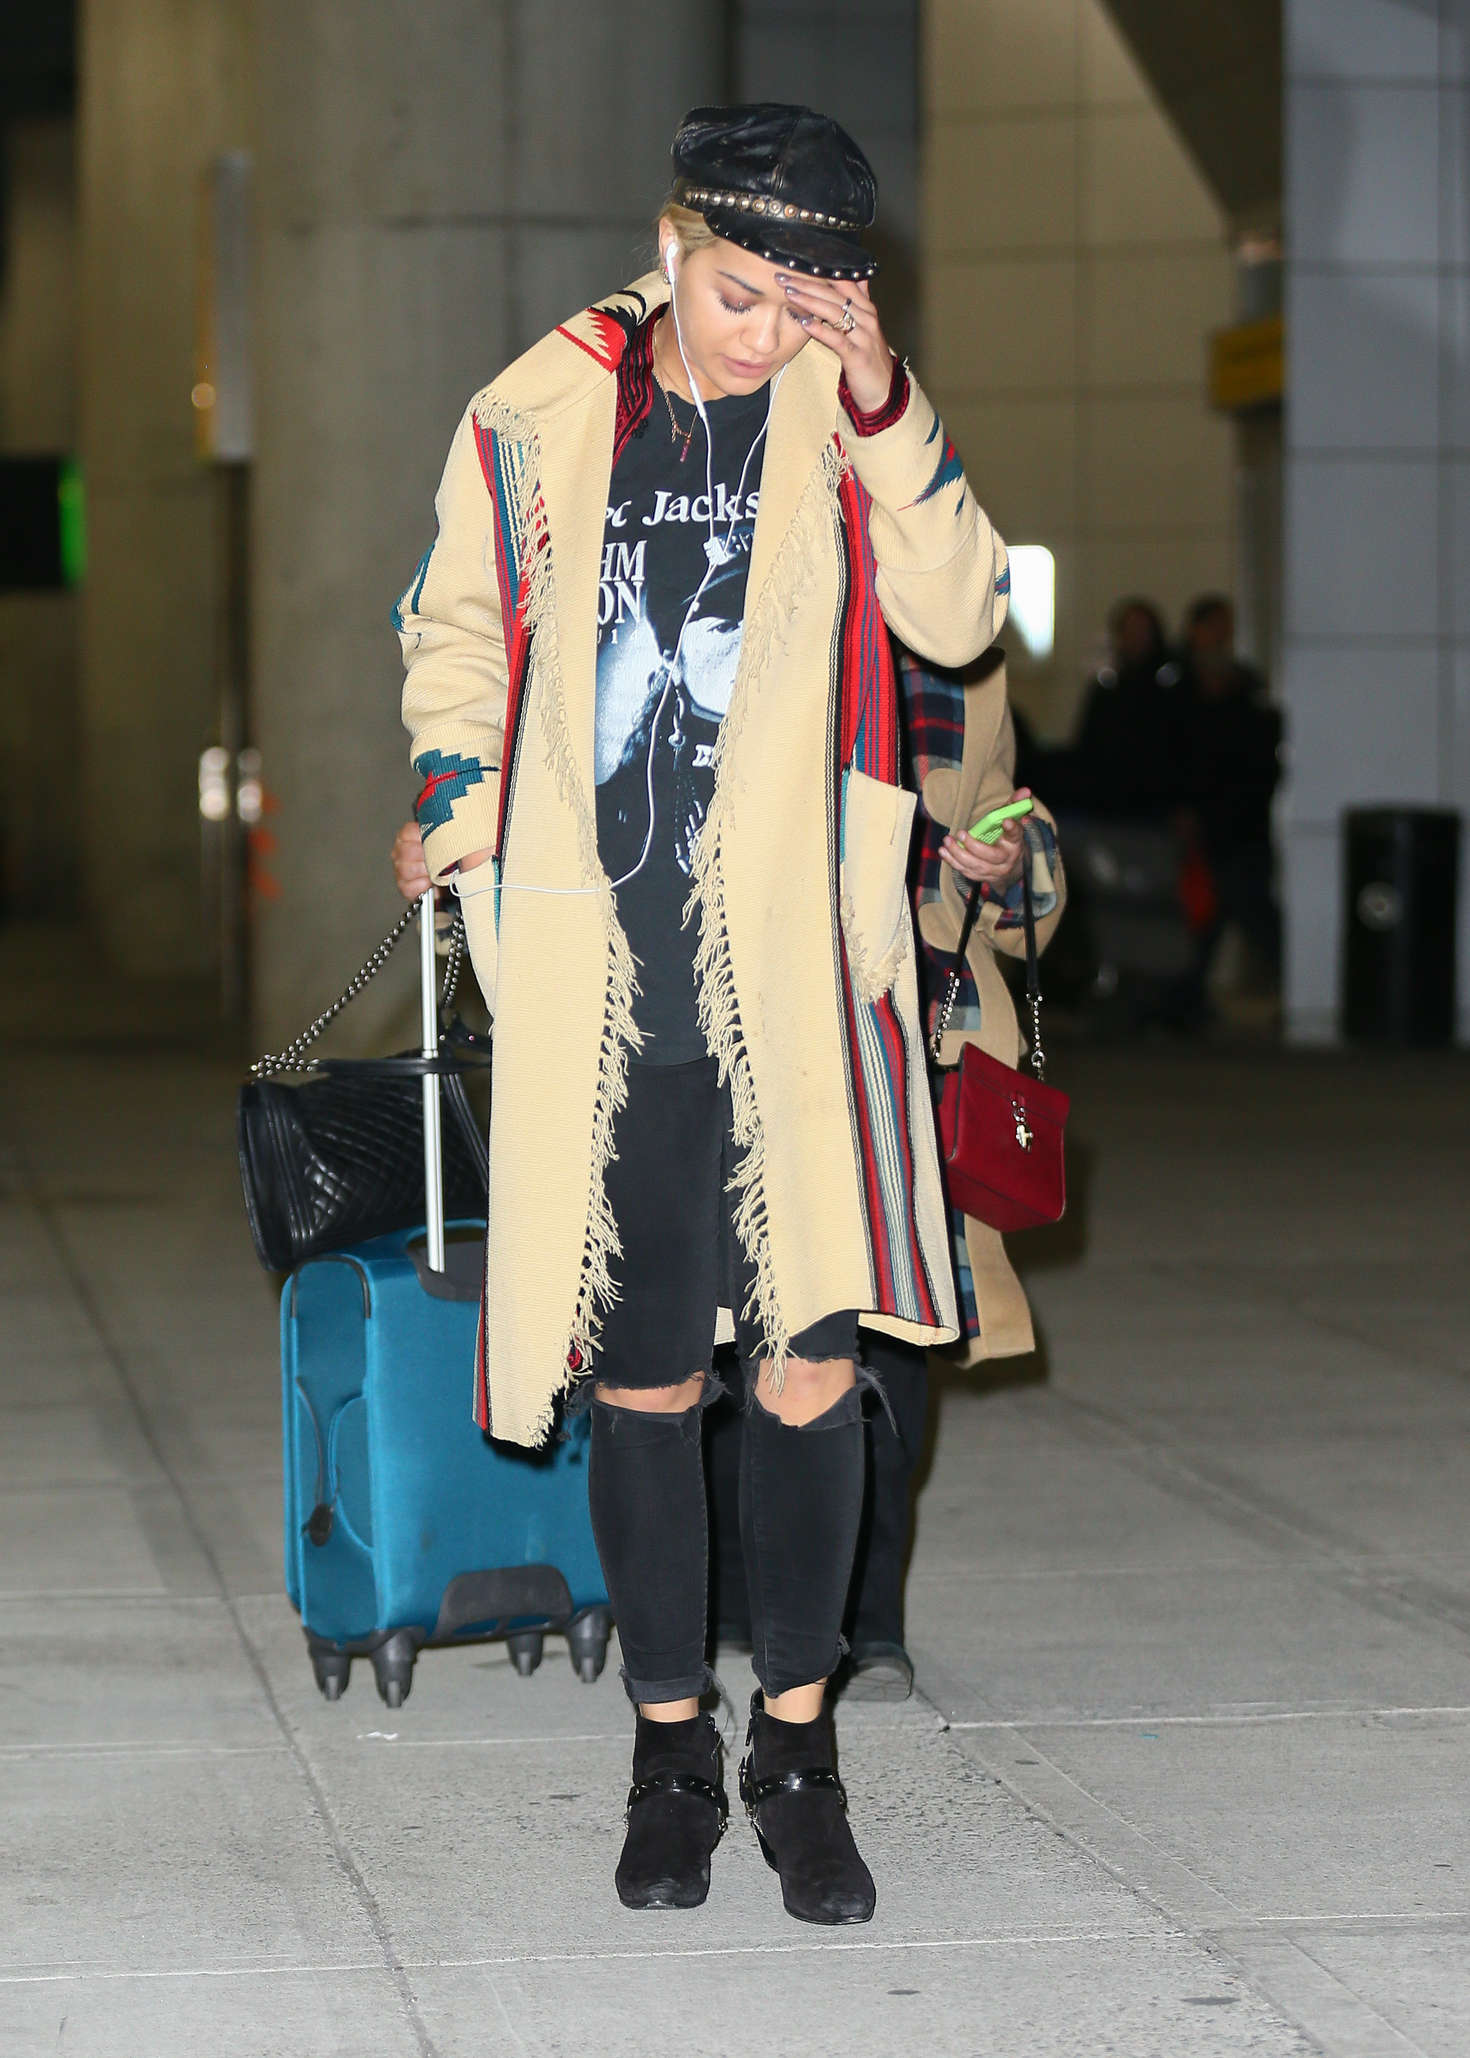 Rita Ora at JFK Airport in NYC